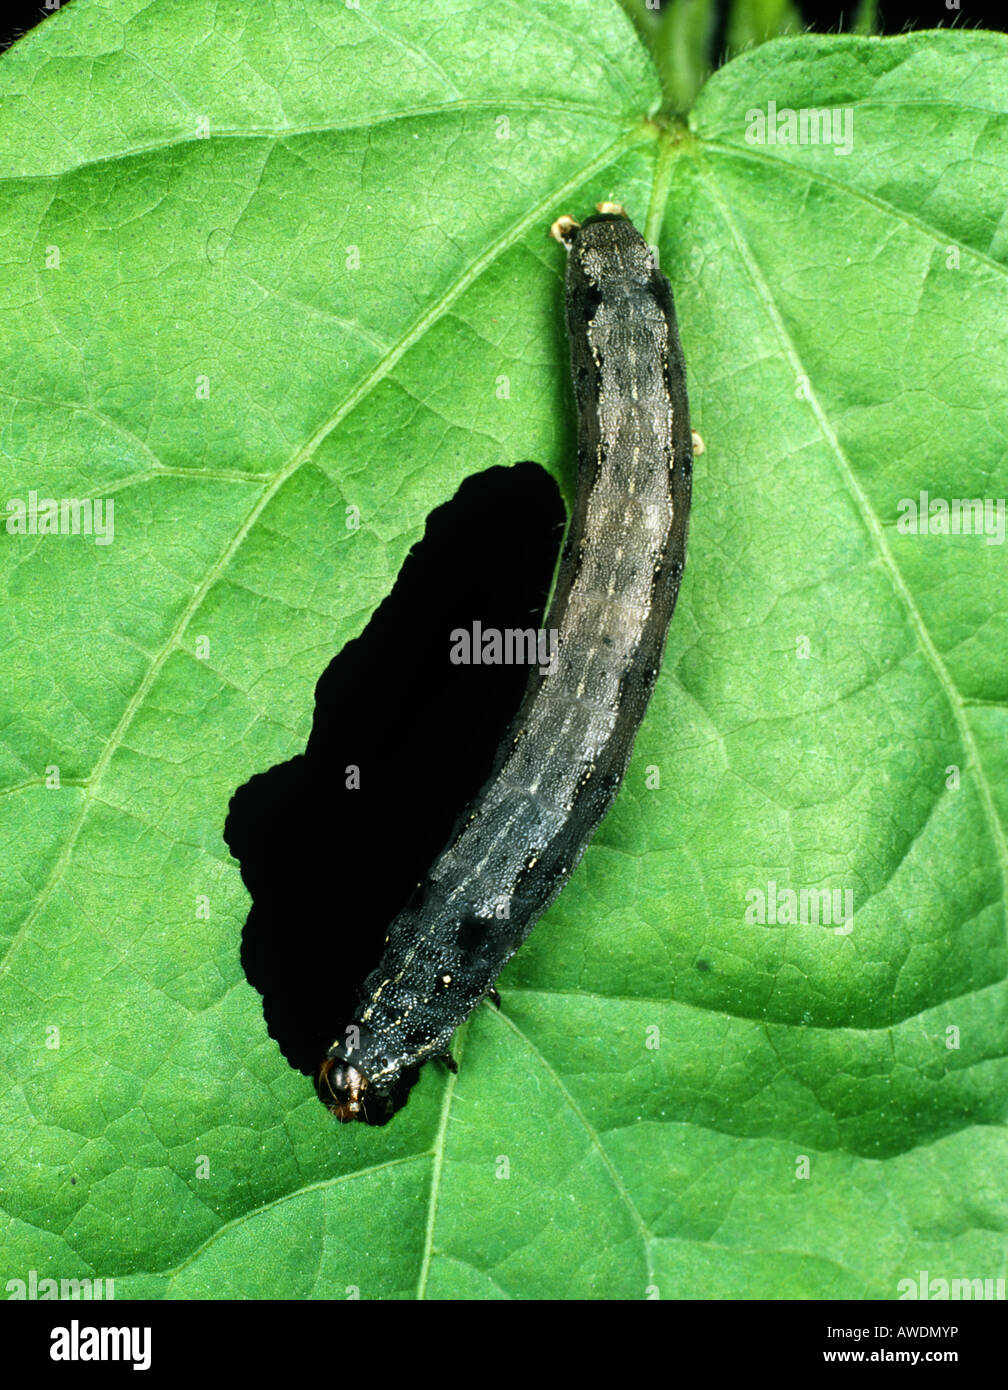 Leafworm coton chenille Spodoptera littoralis se nourrissent d'une feuille de coton Banque D'Images